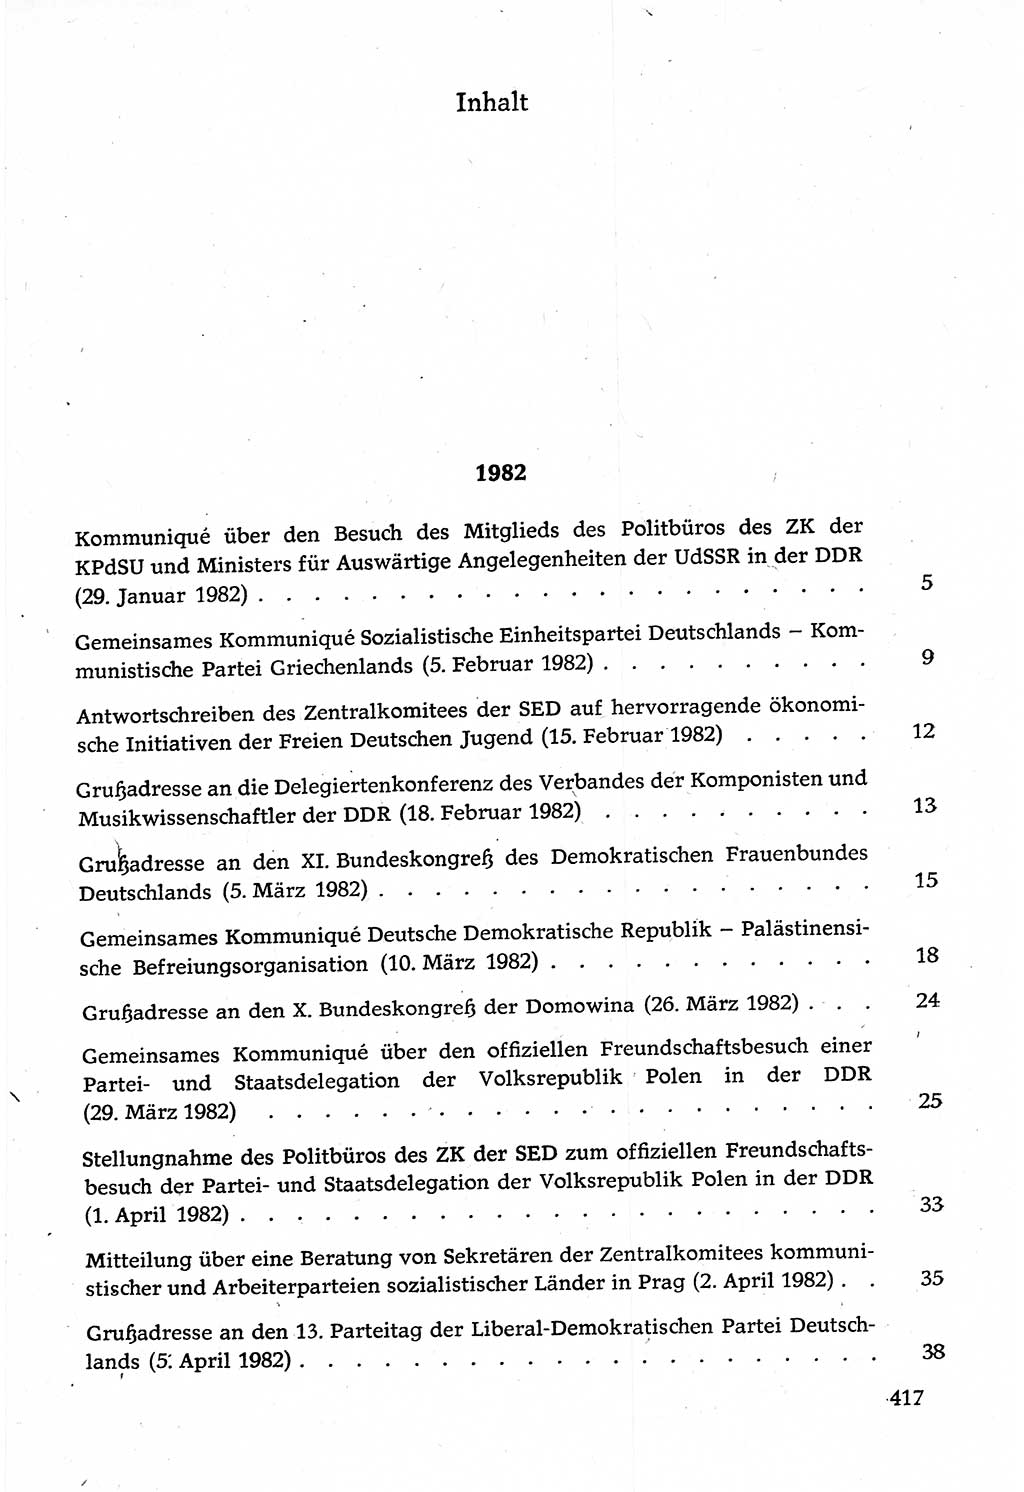 Dokumente der Sozialistischen Einheitspartei Deutschlands (SED) [Deutsche Demokratische Republik (DDR)] 1982-1983, Seite 417 (Dok. SED DDR 1982-1983, S. 417)